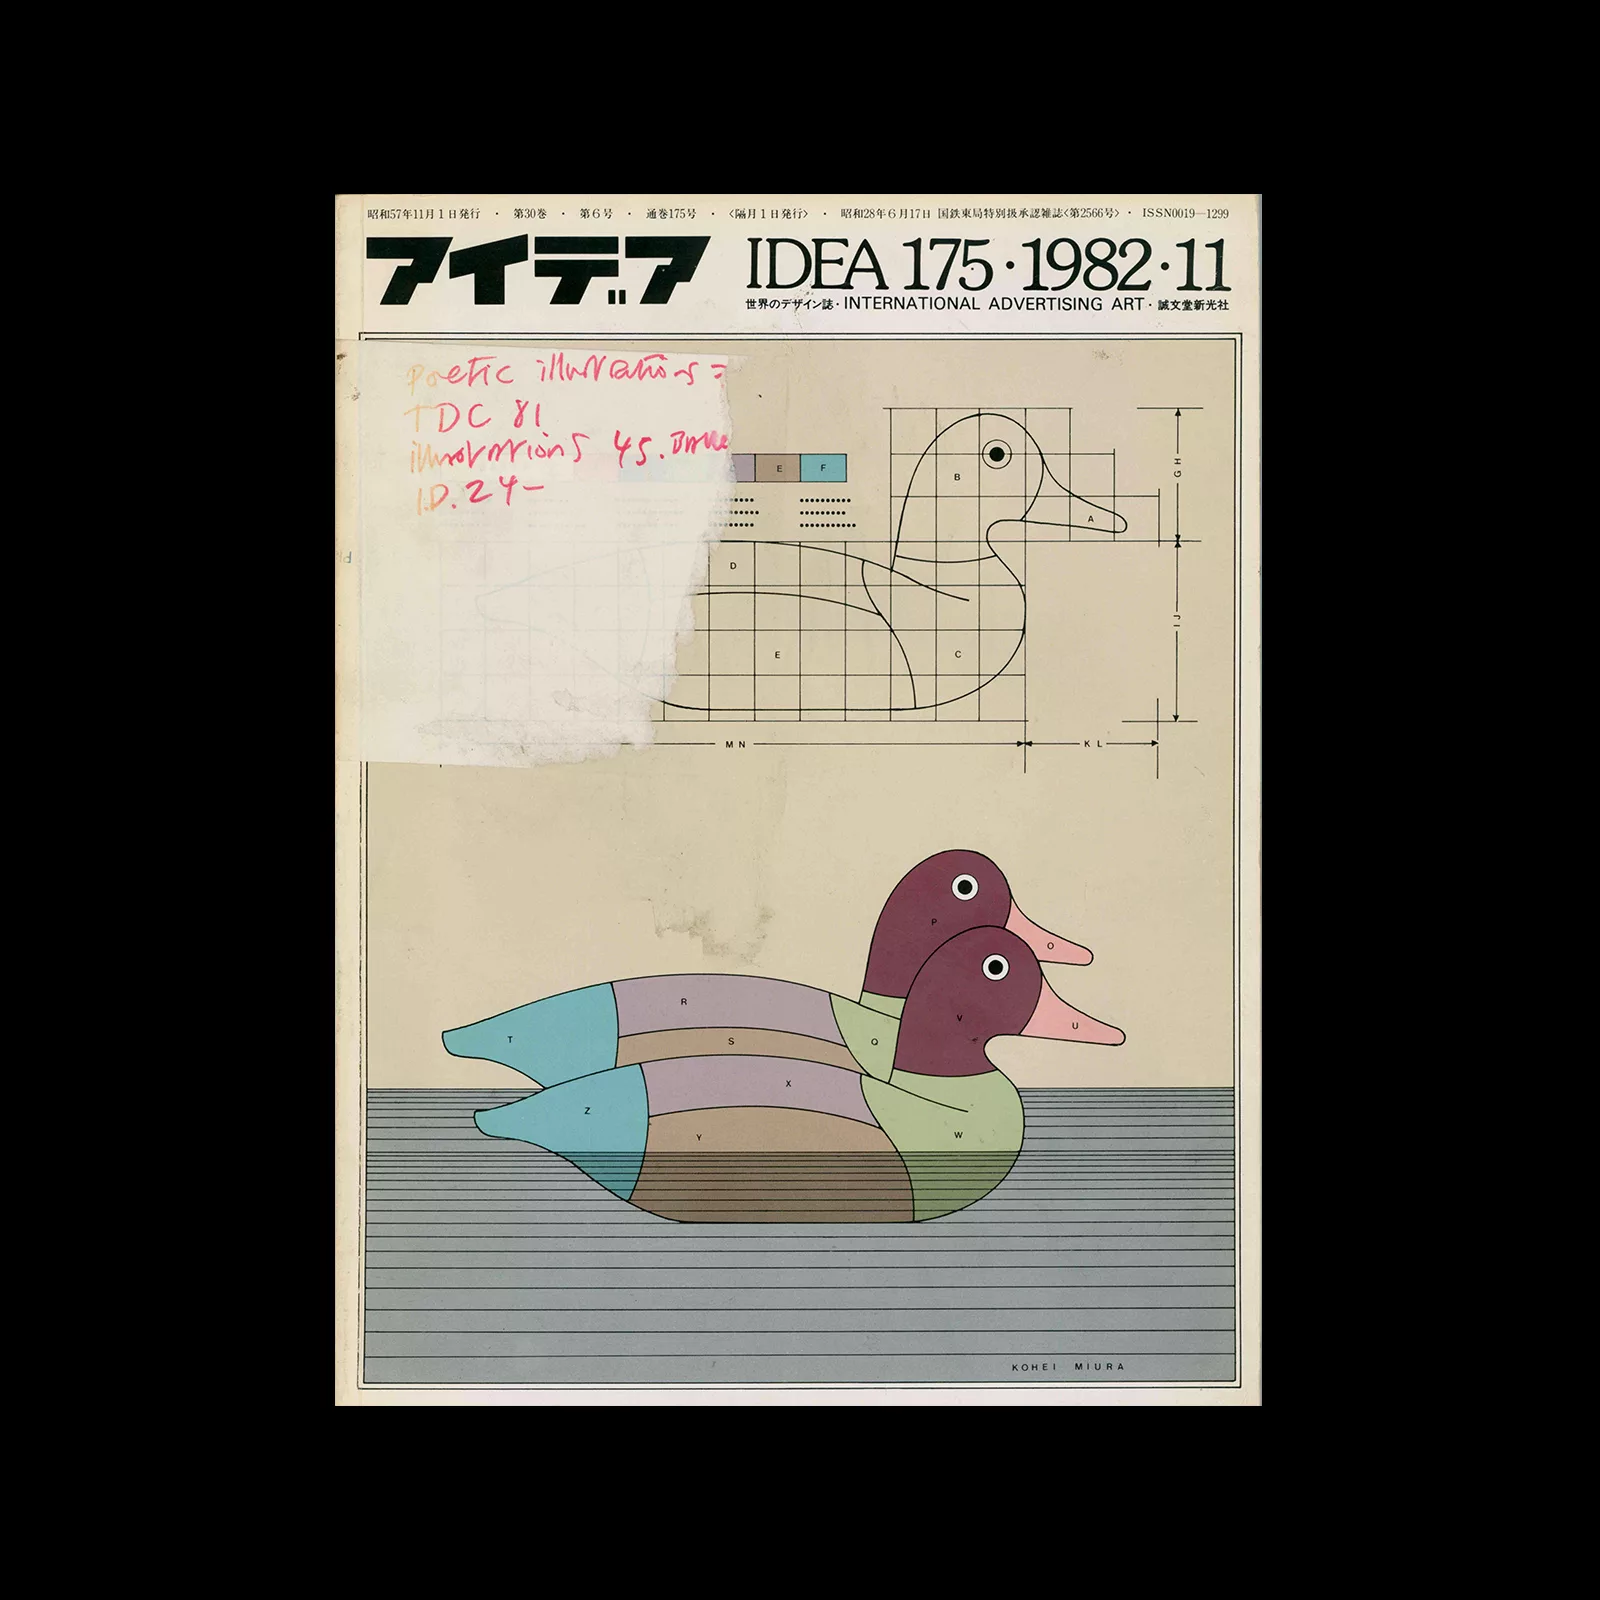 Idea 175, 1982-11. Cover design by Kohei Miura